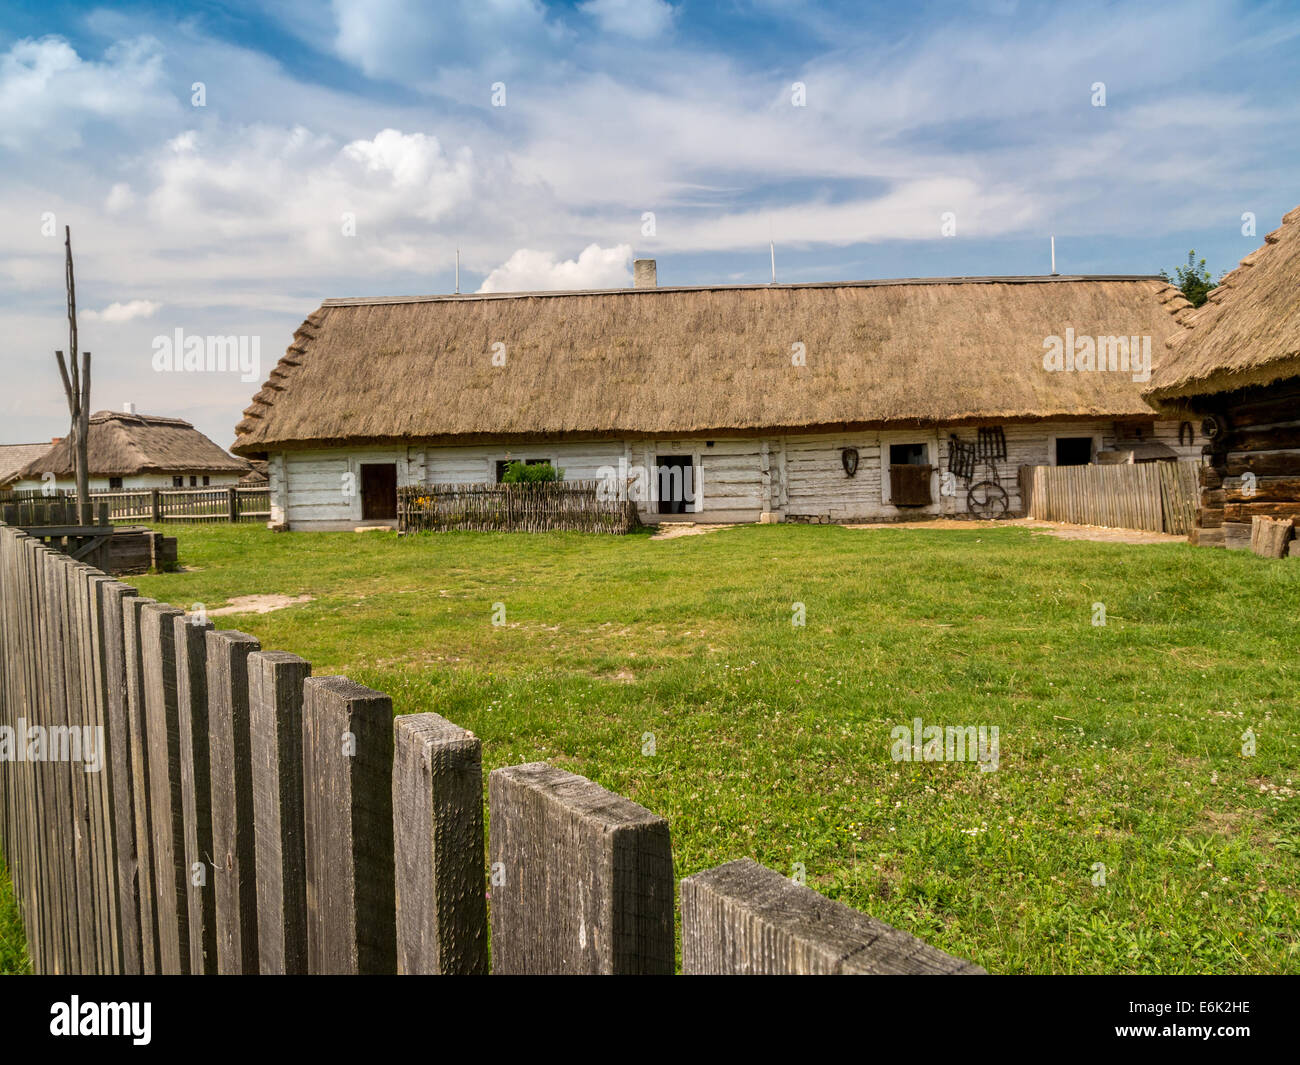 Stile vecchio cascinale polacco con annessi con tetto in paglia e Picket Fence shot contro il cielo blu Foto Stock